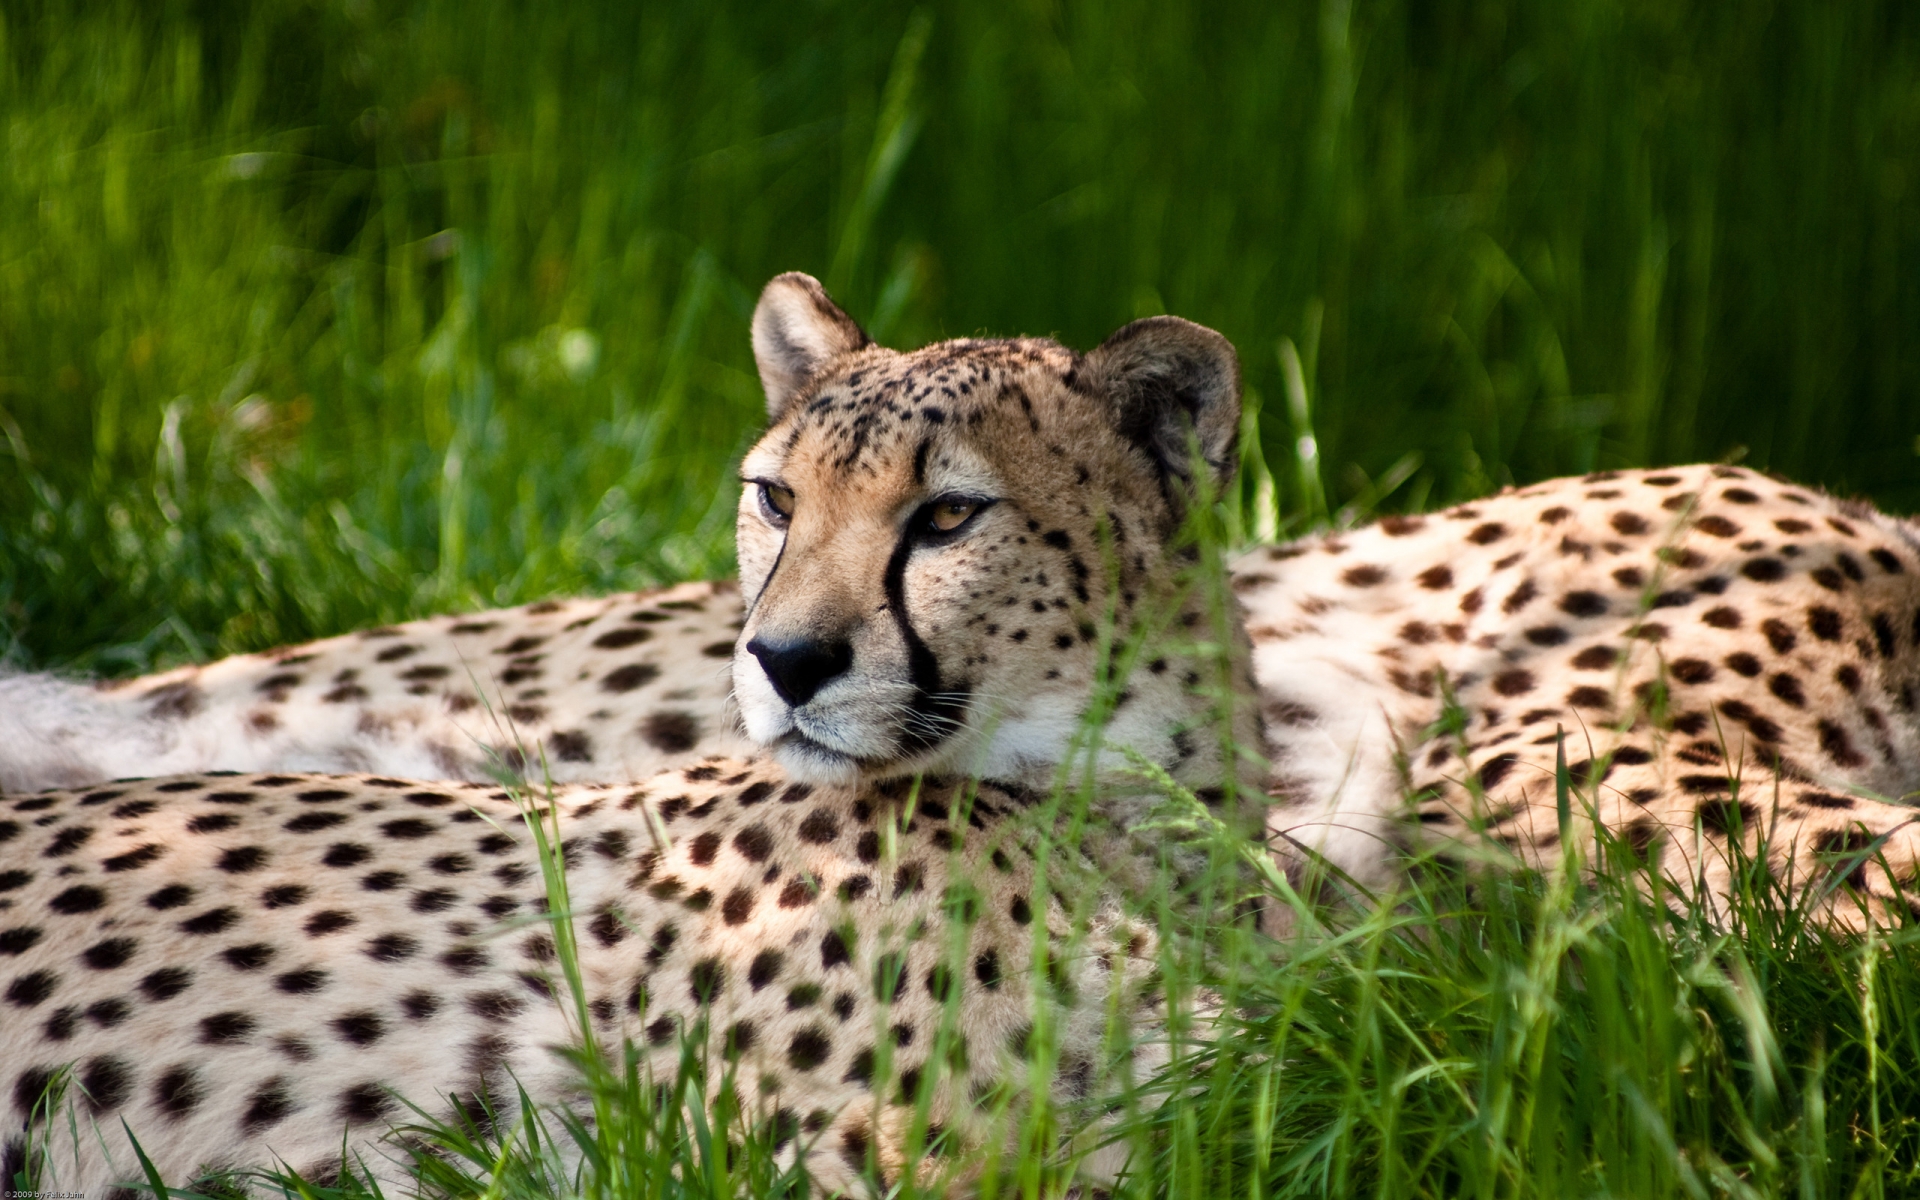 Cheetah Beauty for 1920 x 1200 widescreen resolution